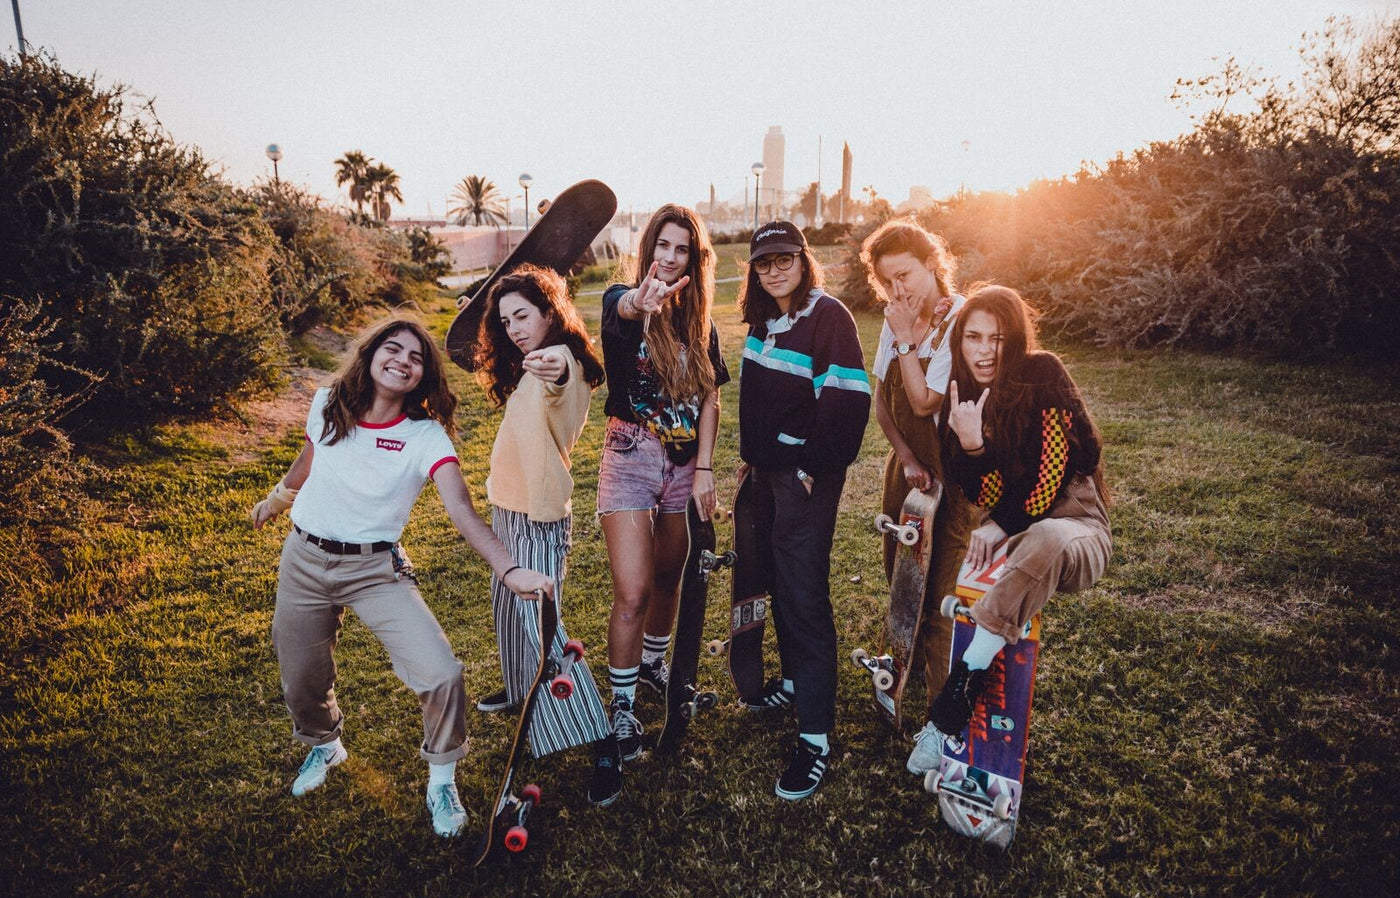 New Video: Meet The Skate Girl Gang from Barcelona